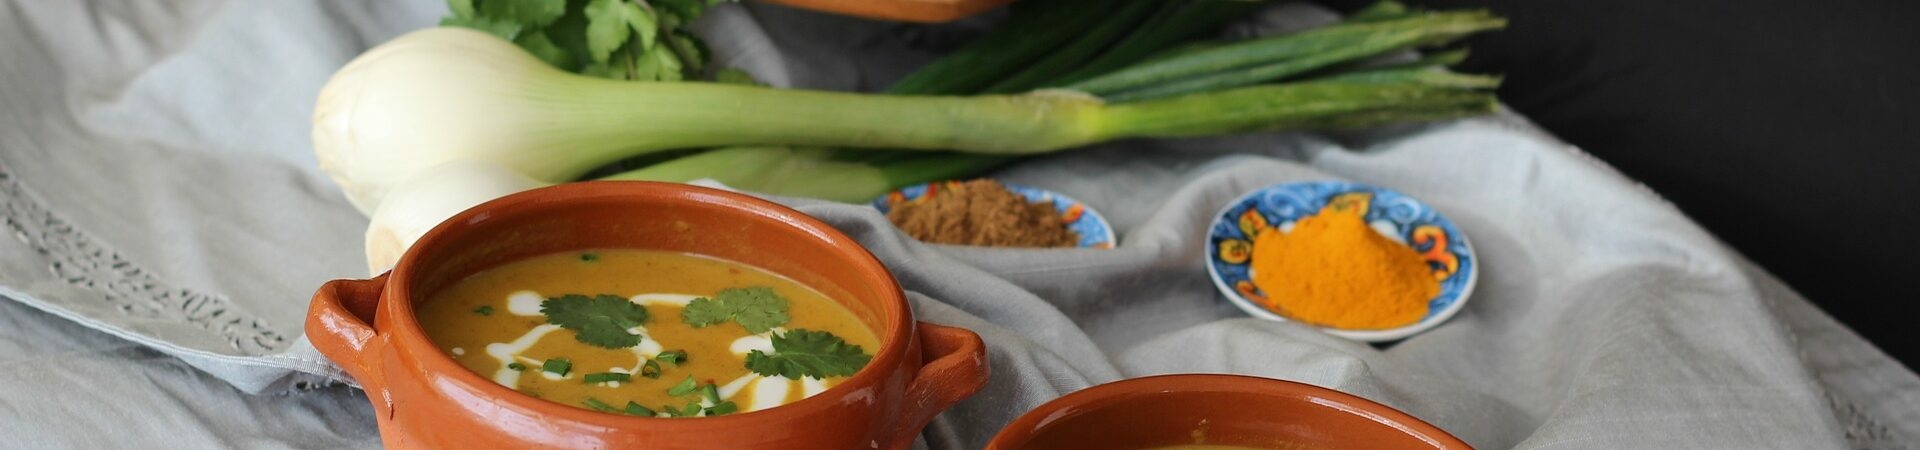 Kürbissuppe mit Kokosmilch und Curry - gesund essen und gesund leben